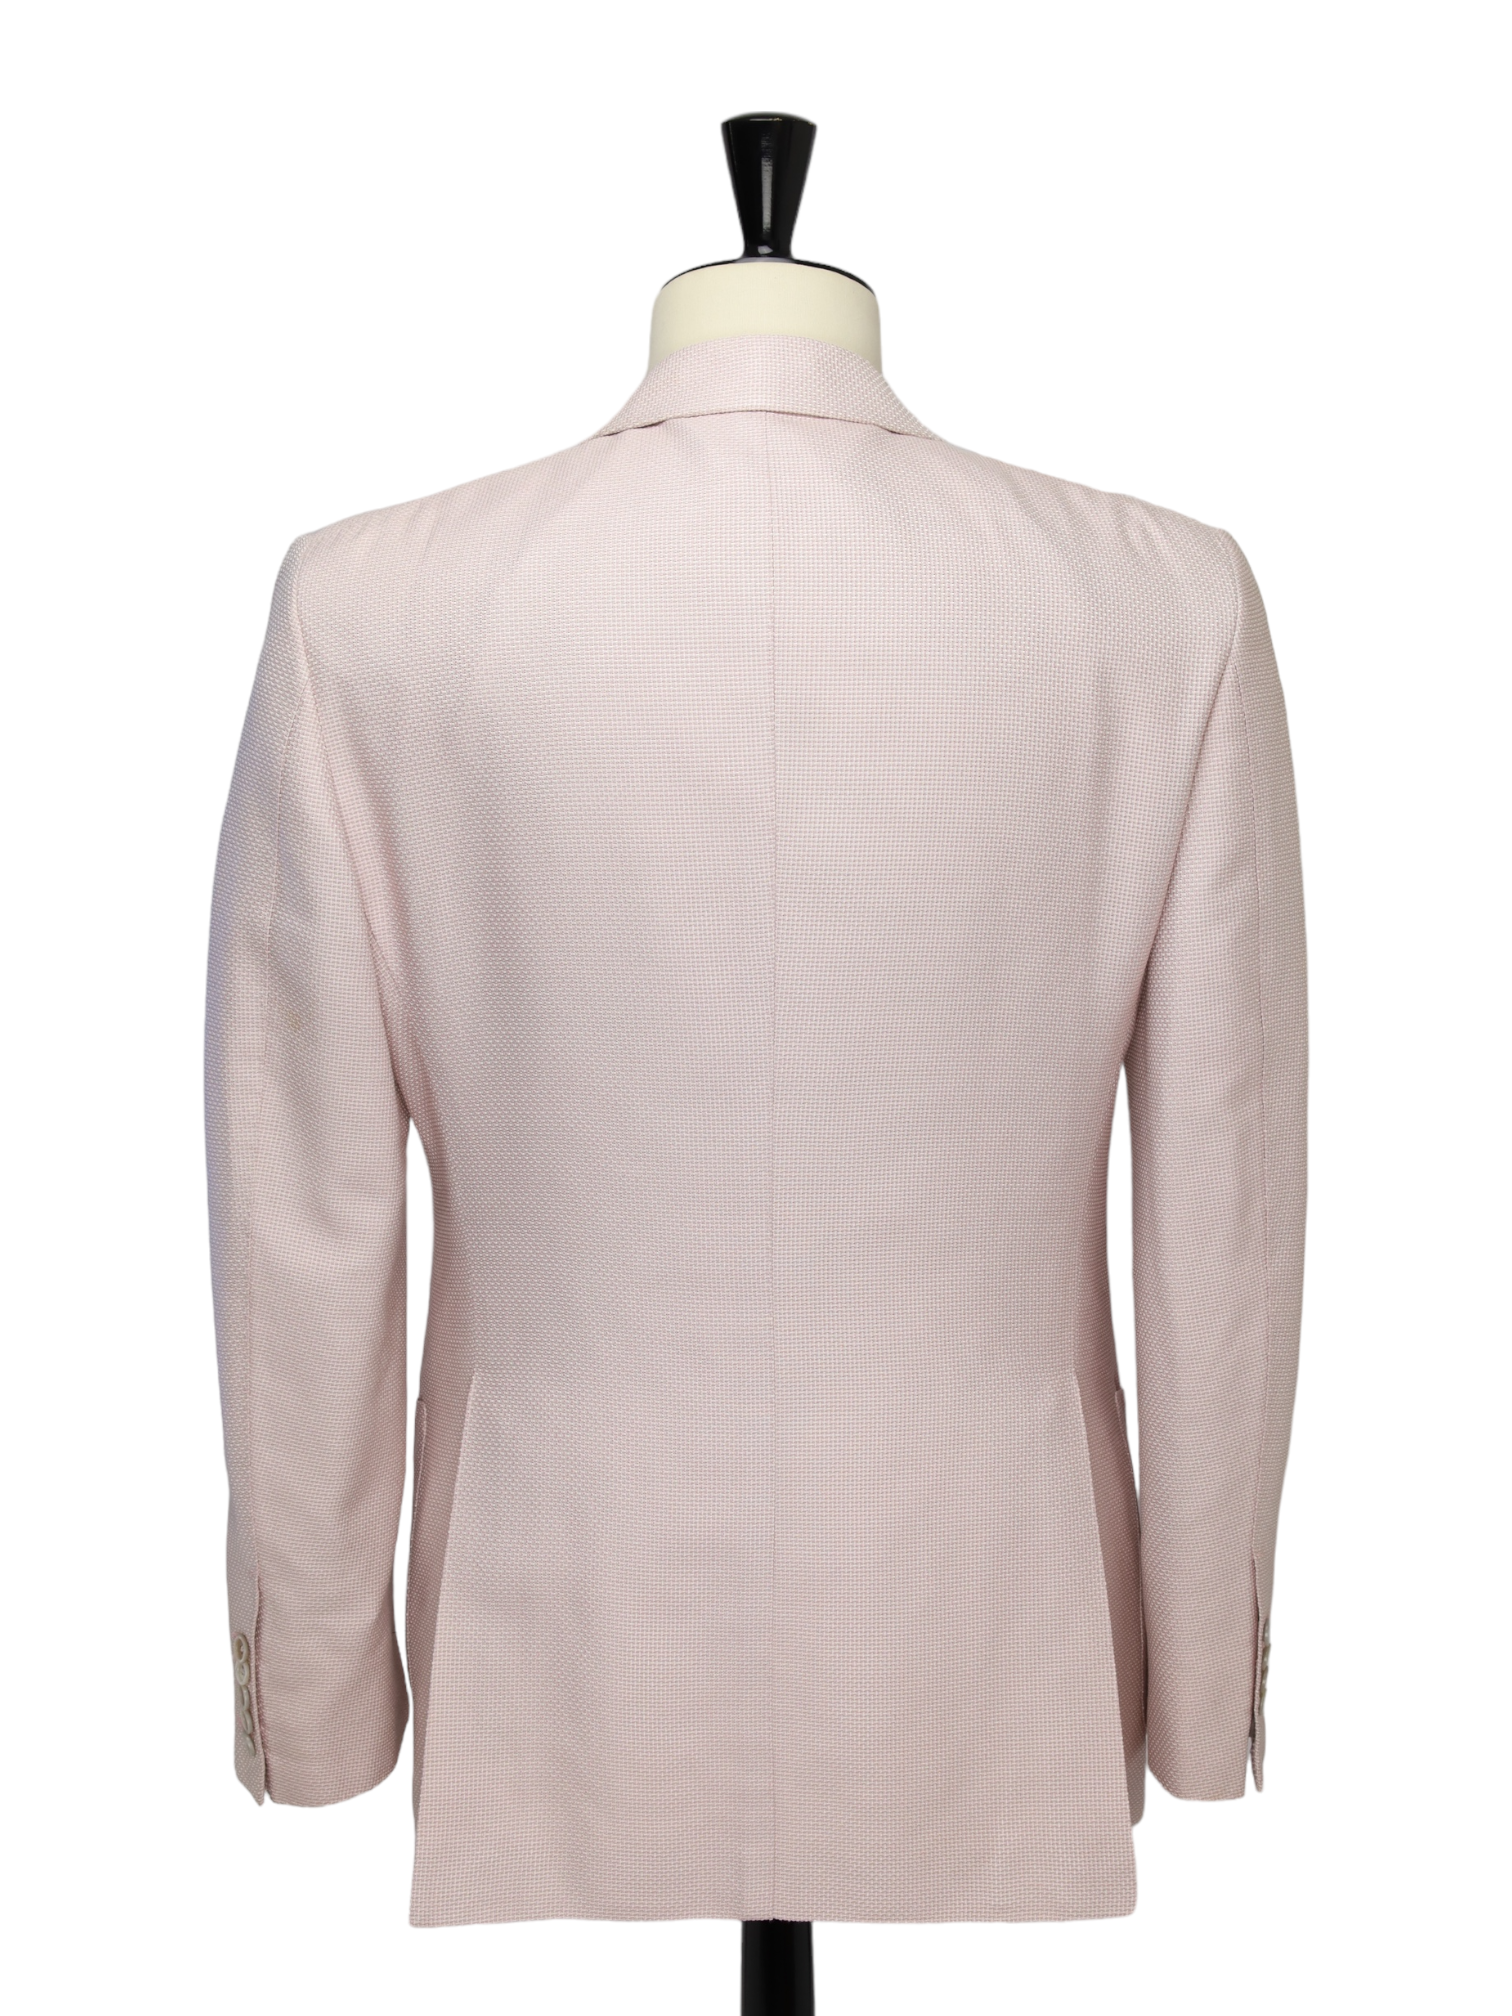 Tom Ford Light Pink Silk & Cotton Structured Windsor Jacket